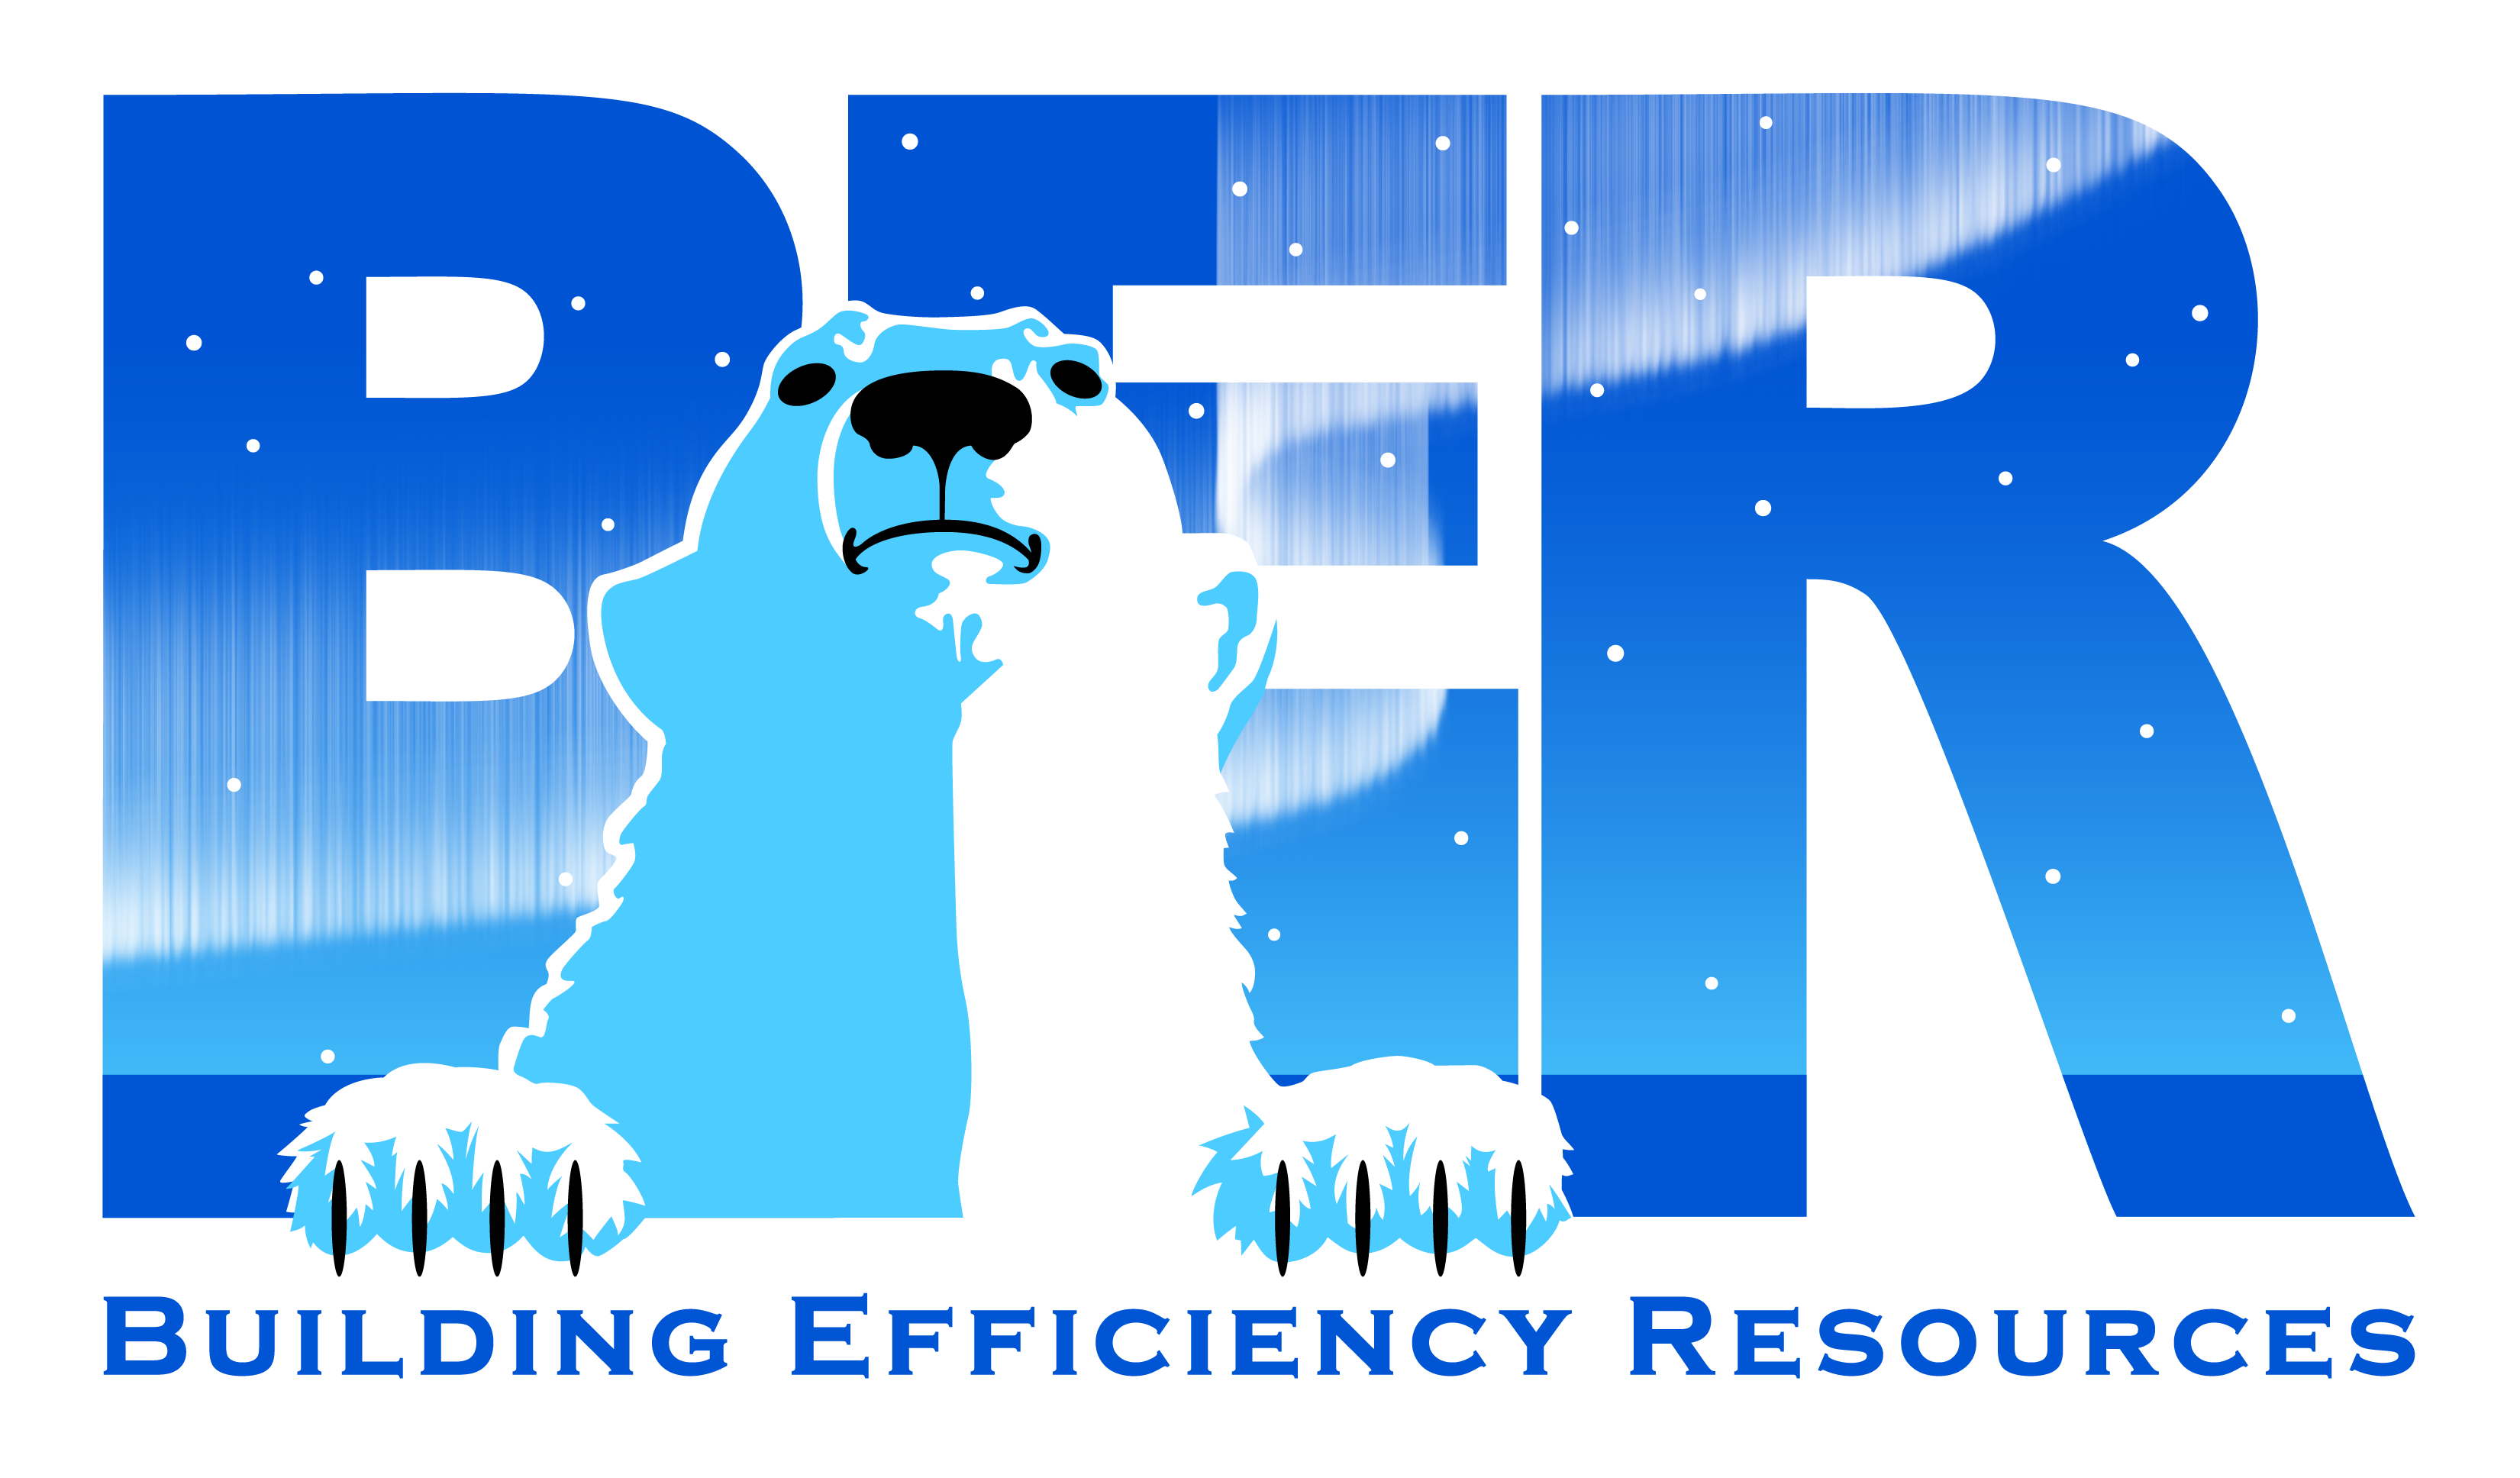 Building Efficiency Resources company logo